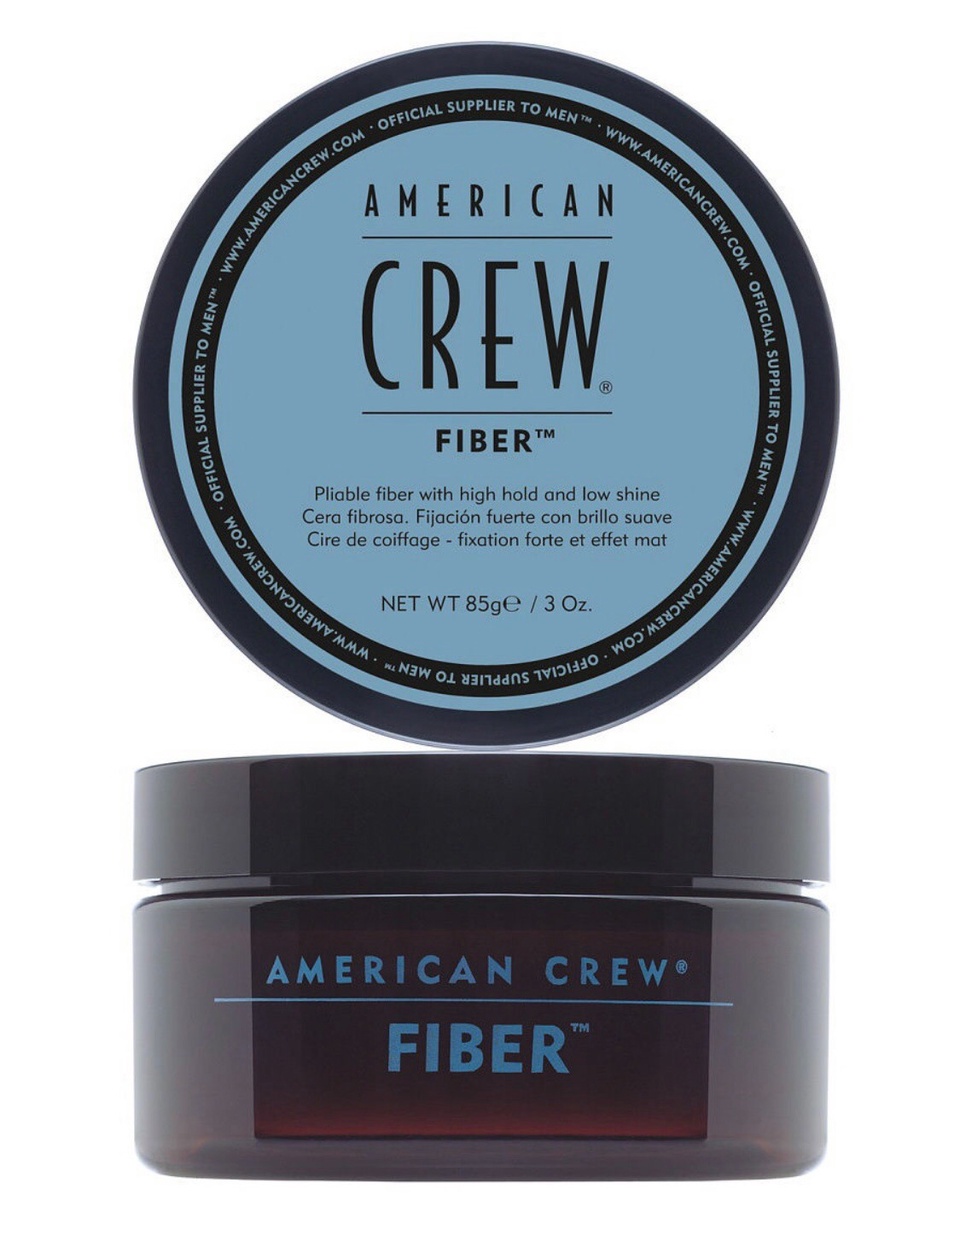 American Crew Fiber - крем средней фиксации с натуральным блеском 100 мл - 1 300 ₽, заказать онлайн.